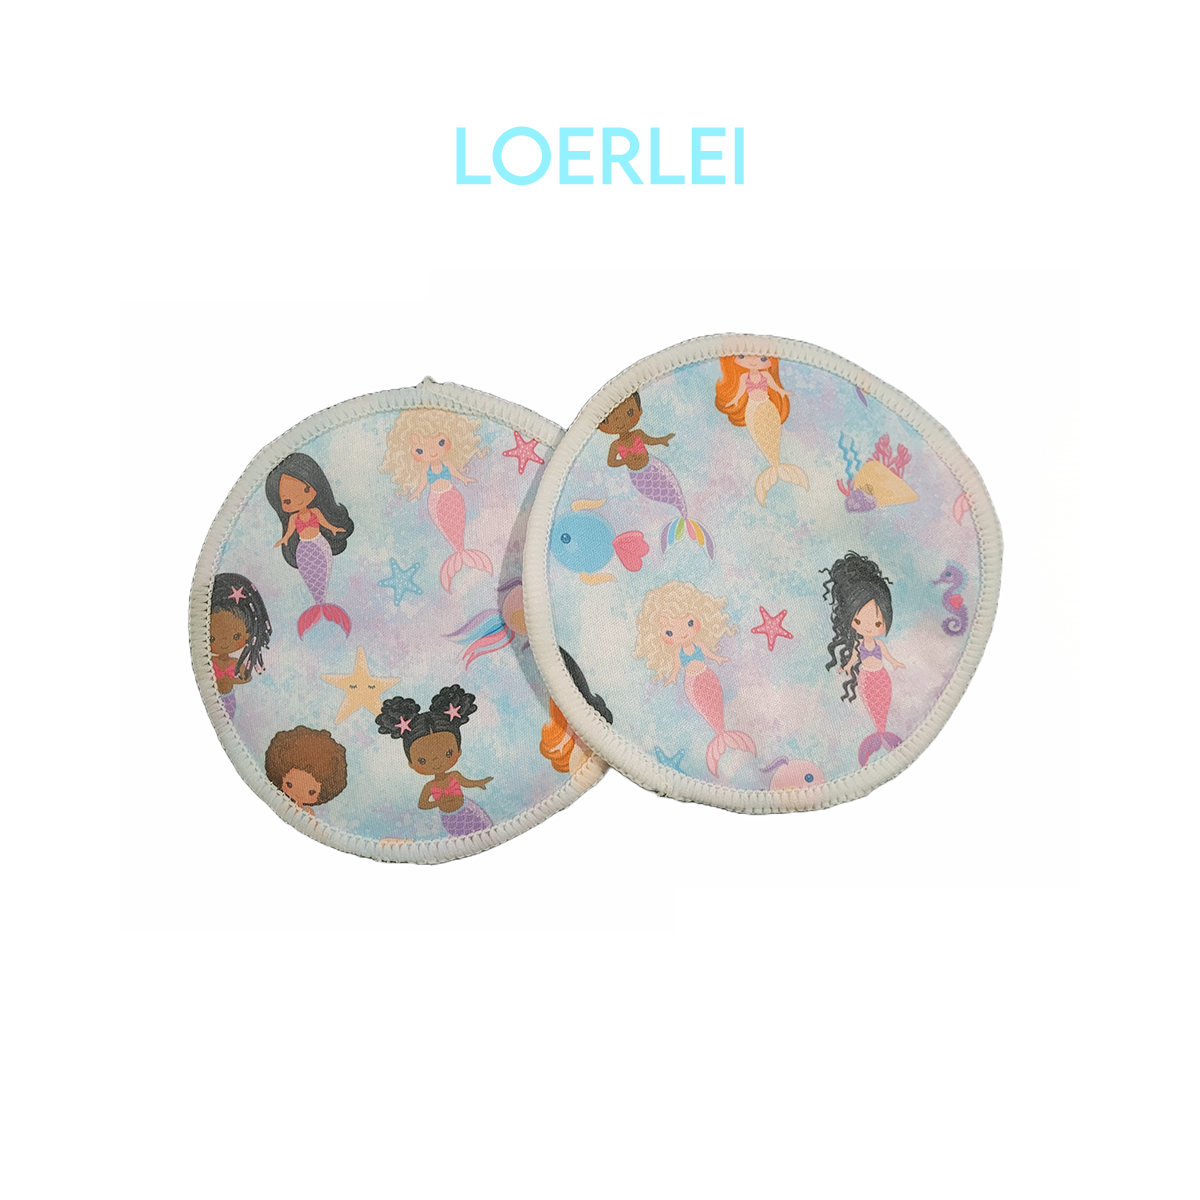 Nursing Pads set of 2 - Lorelei